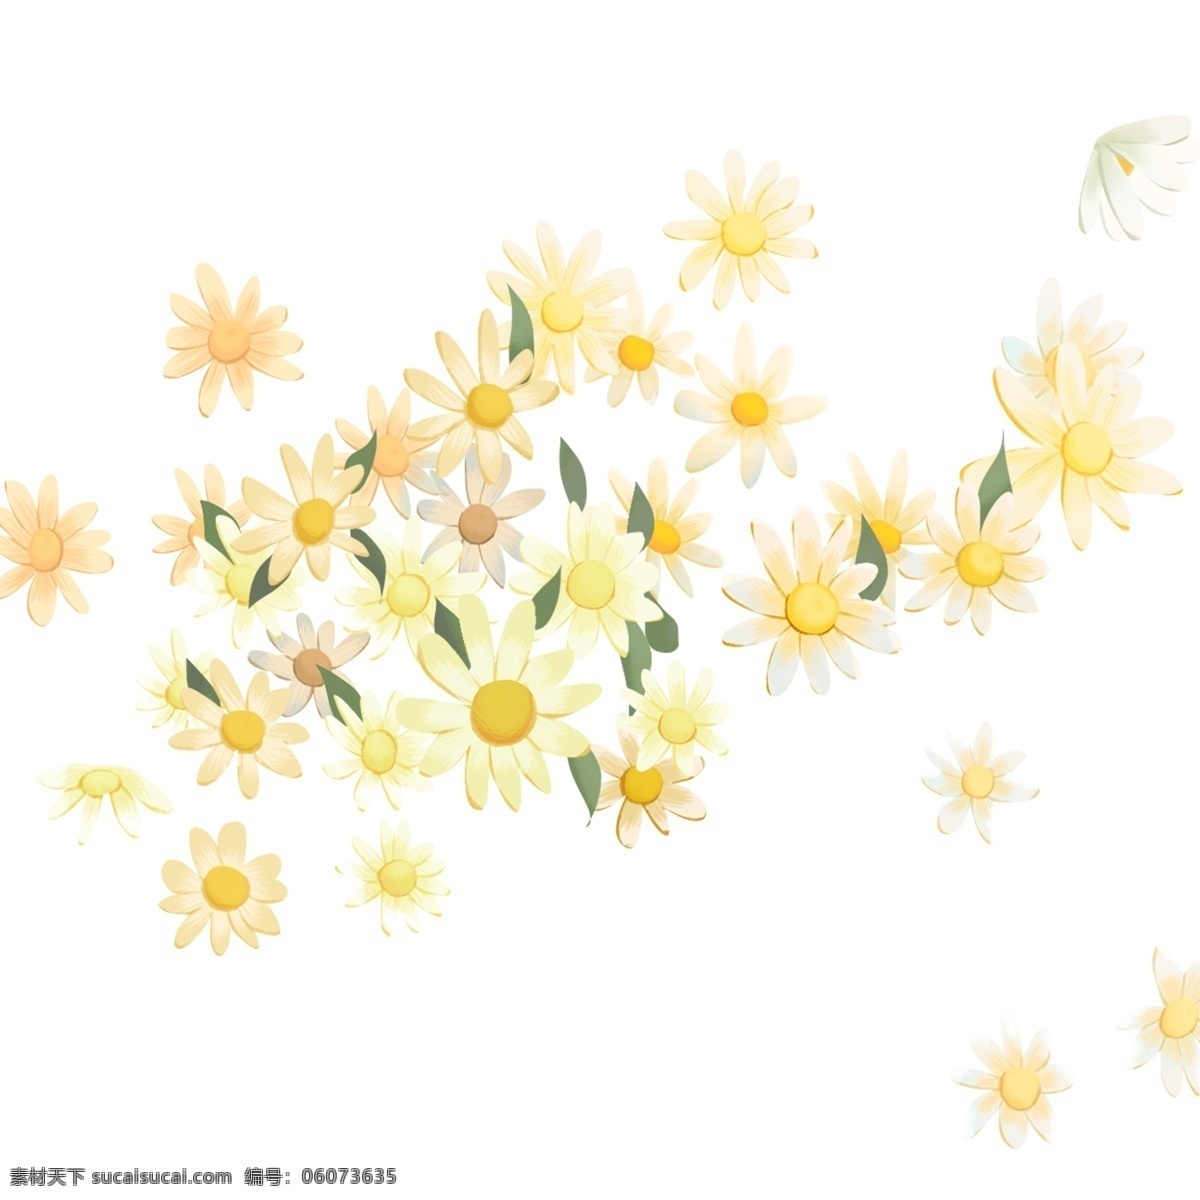 黄色 植物 花朵 元素 装饰 保护环境 风景 卡通 插画 叶子 绽放